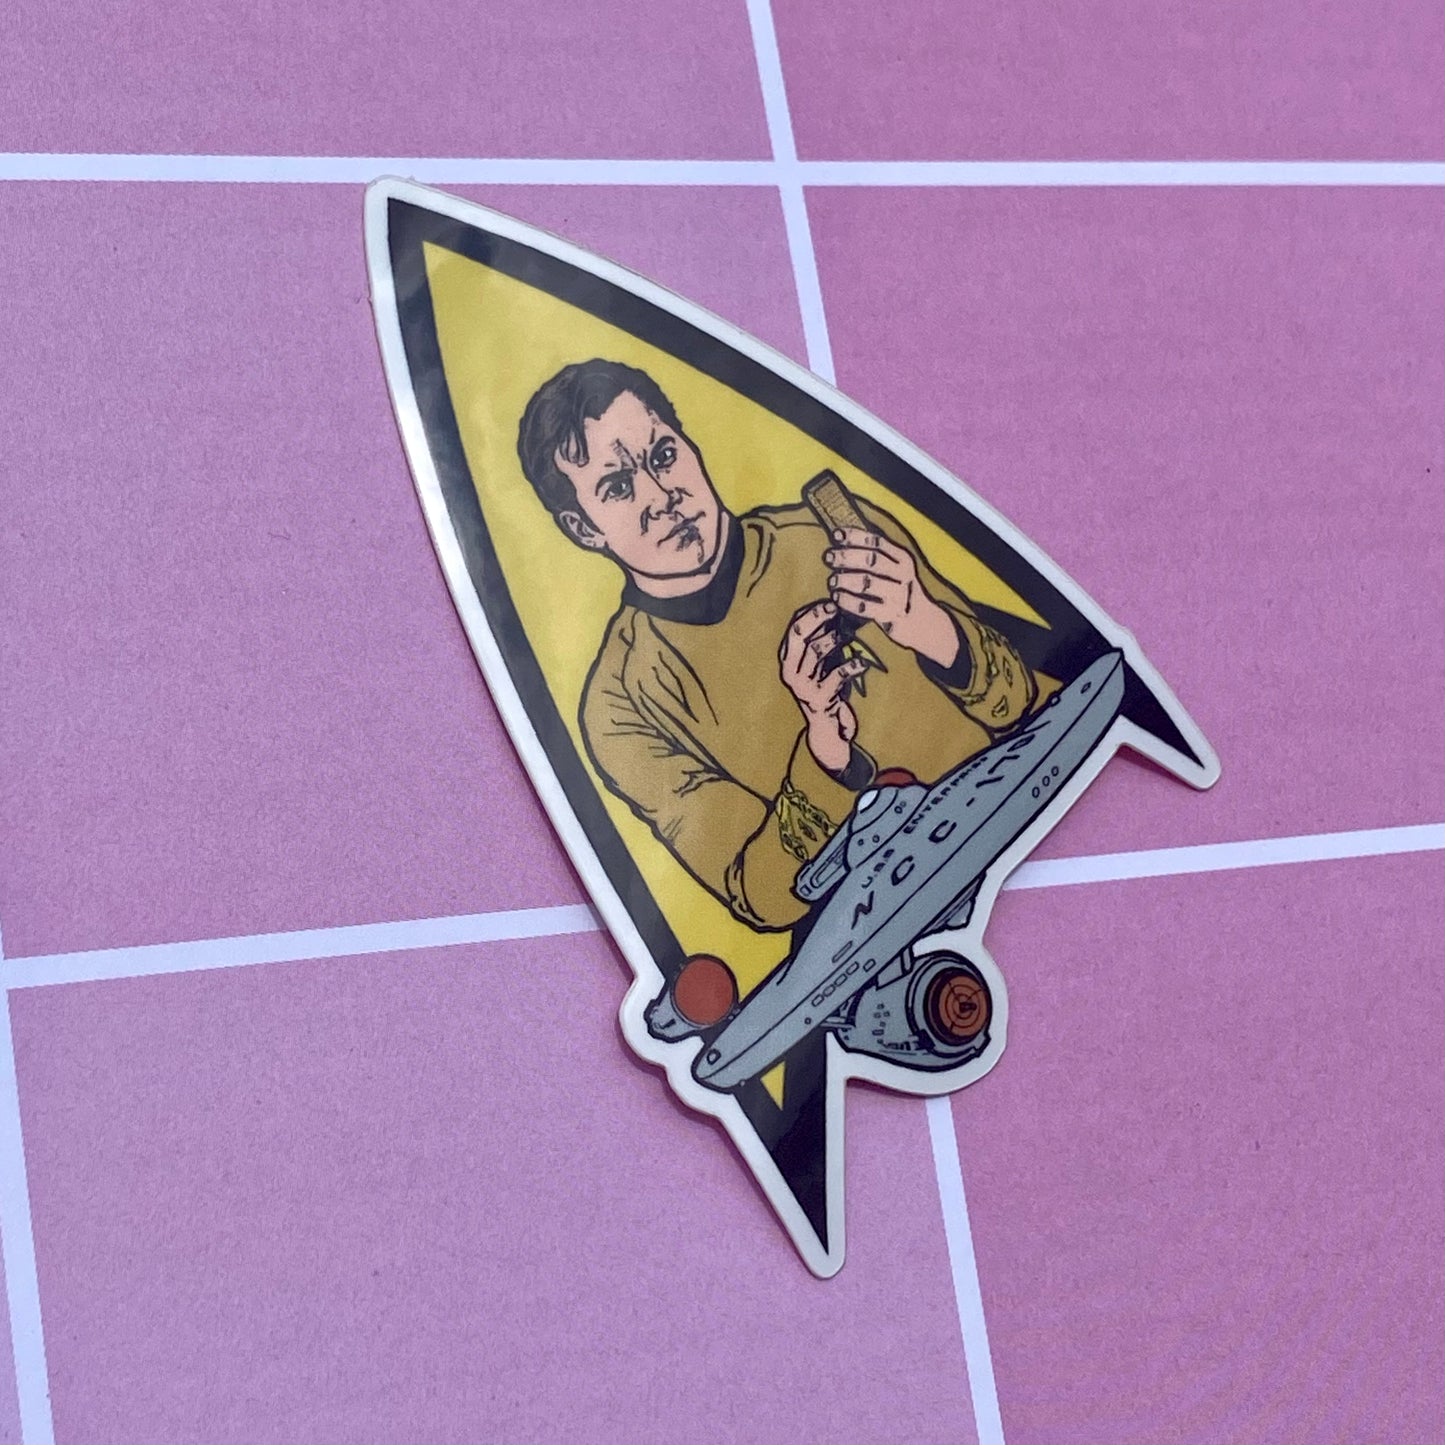 Heroic Captain Kirk 2.5” Vinyl Sticker